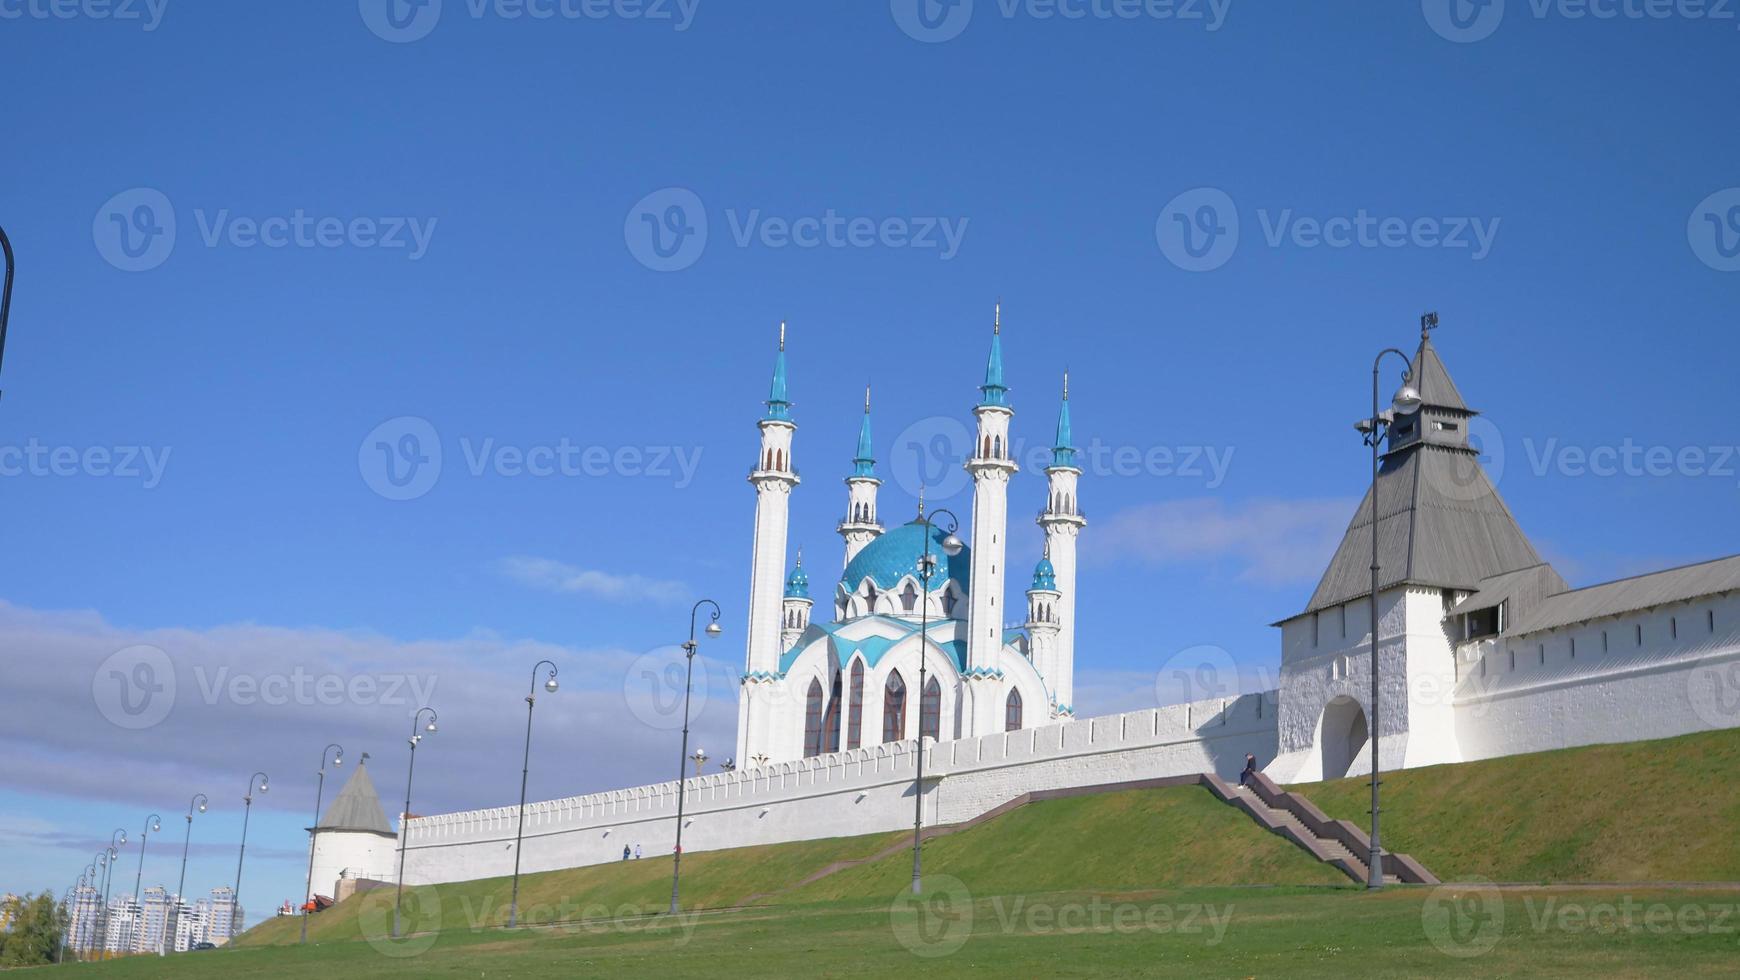 historischer und architektonischer komplex des kasanischen kremls russland foto